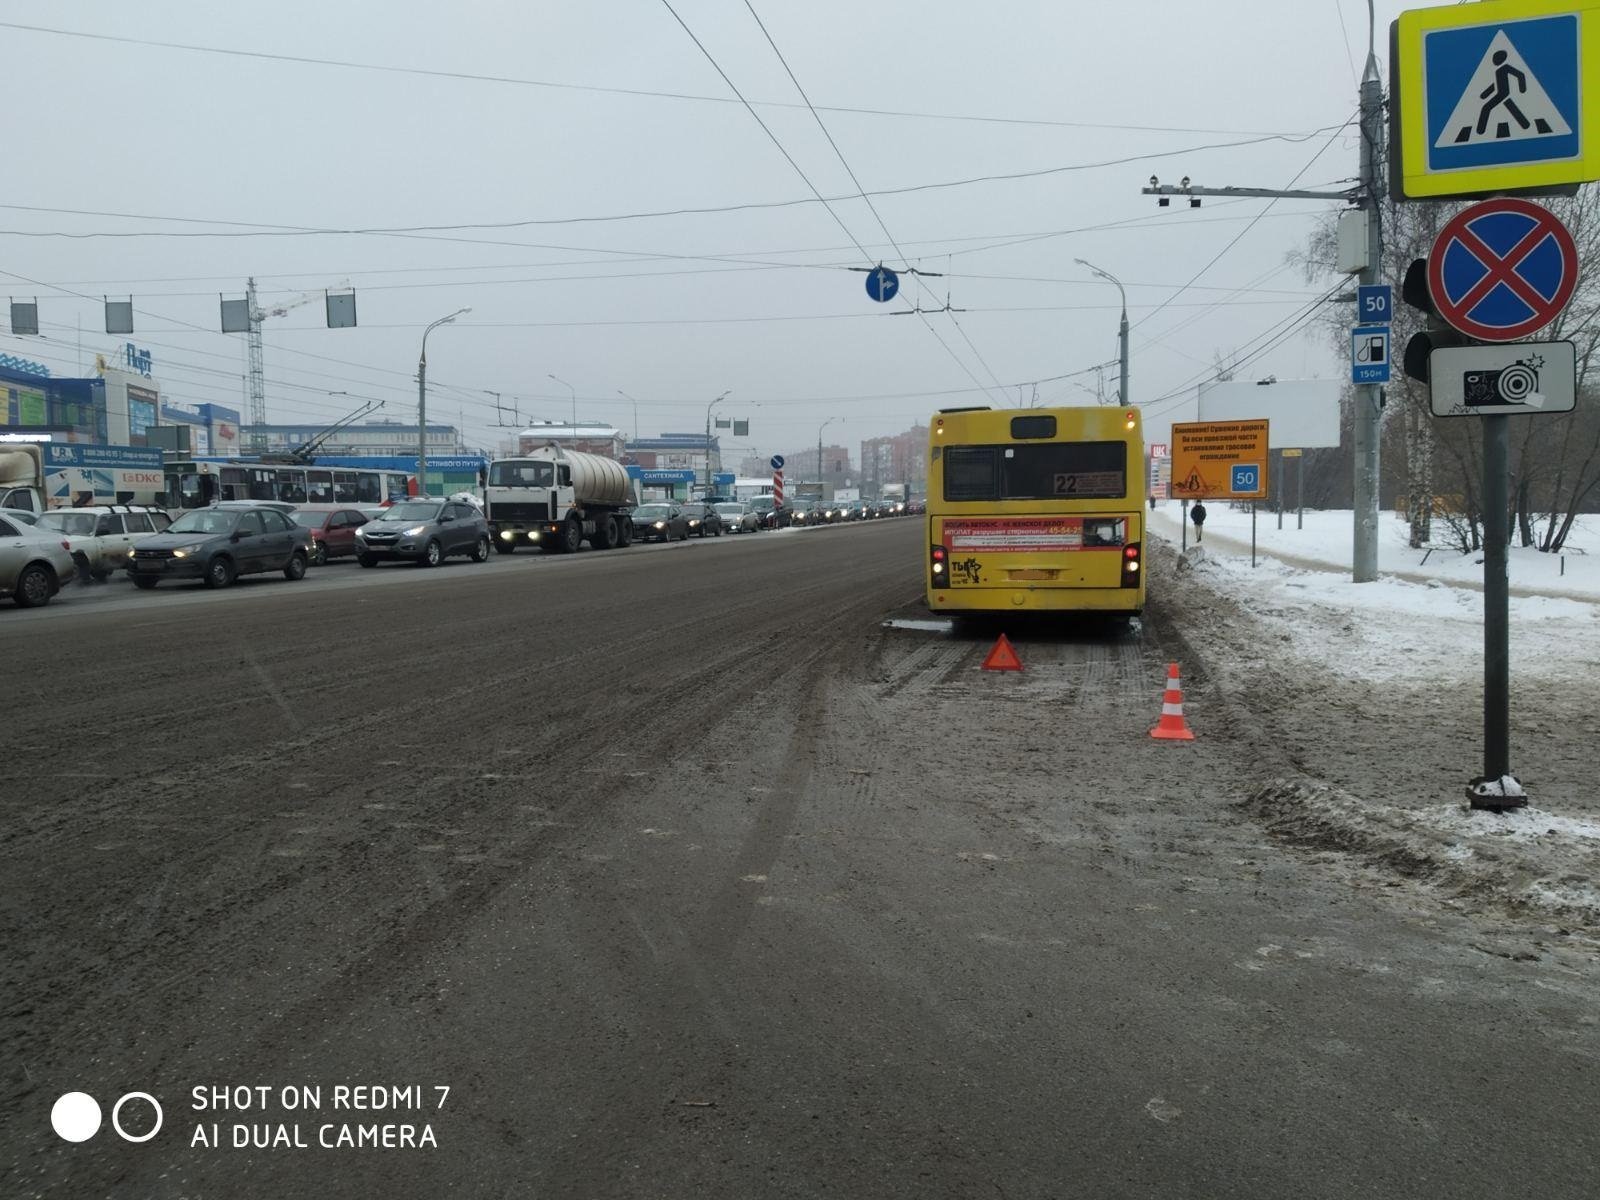 

Автобус в Ижевске сбил женщину на пешеходном переходе

